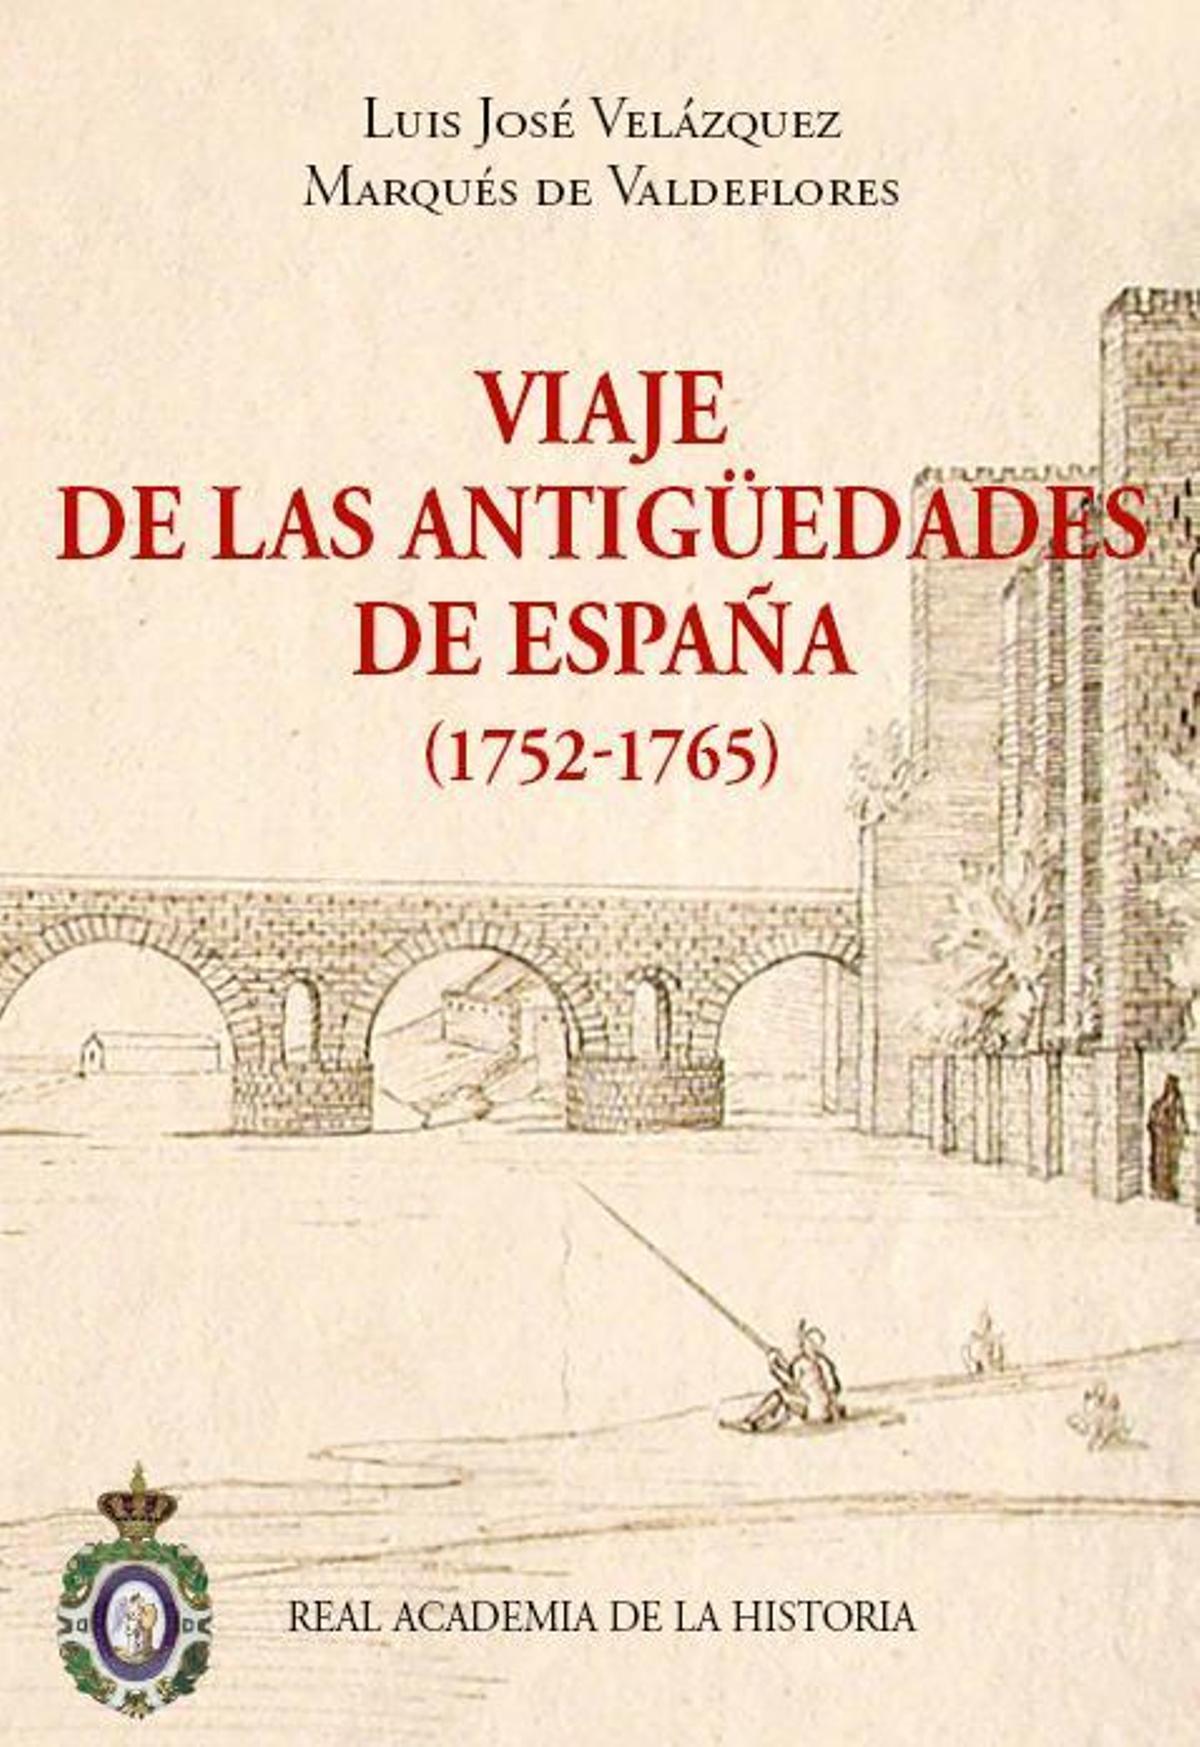 Una de las obras de Luis Velázquez, marqués de Valdeflores, publicada por la Real Academia de la Historia.